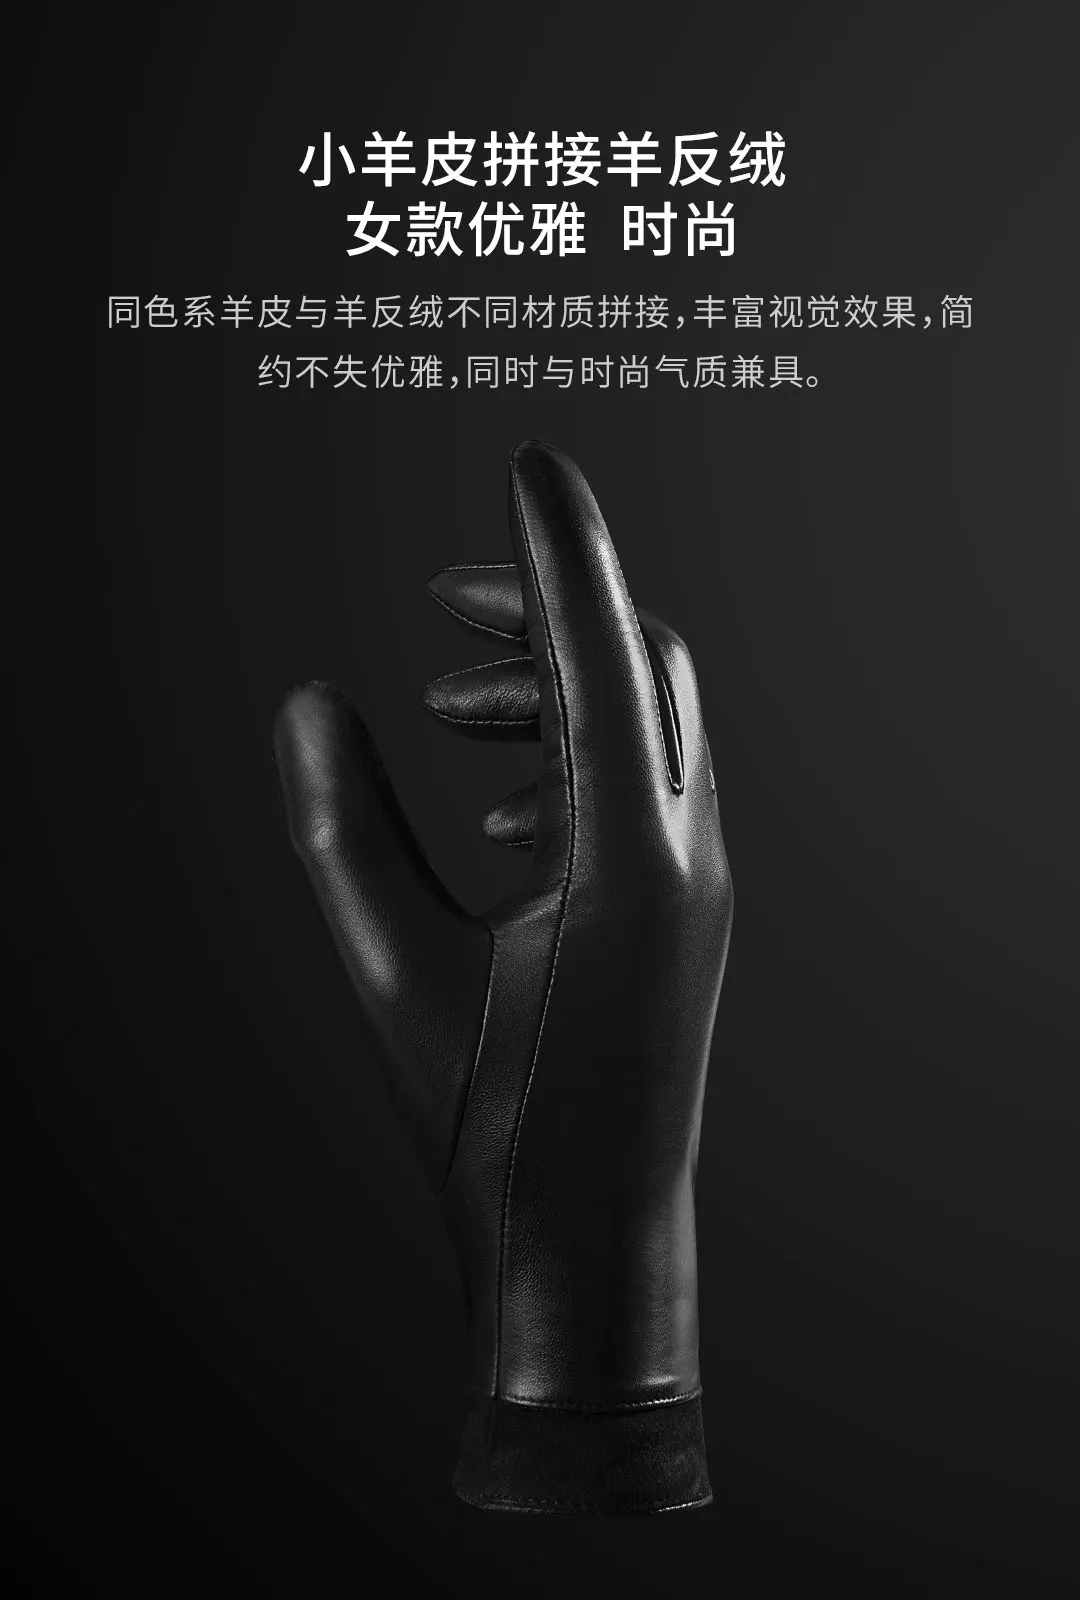 Новые оригинальные Xiaomi Mijia Youpin семислойные испанские перчатки из овечьей кожи с сенсорным экраном(AllTouch) для мужчин и женщин шерсть теплая внутри